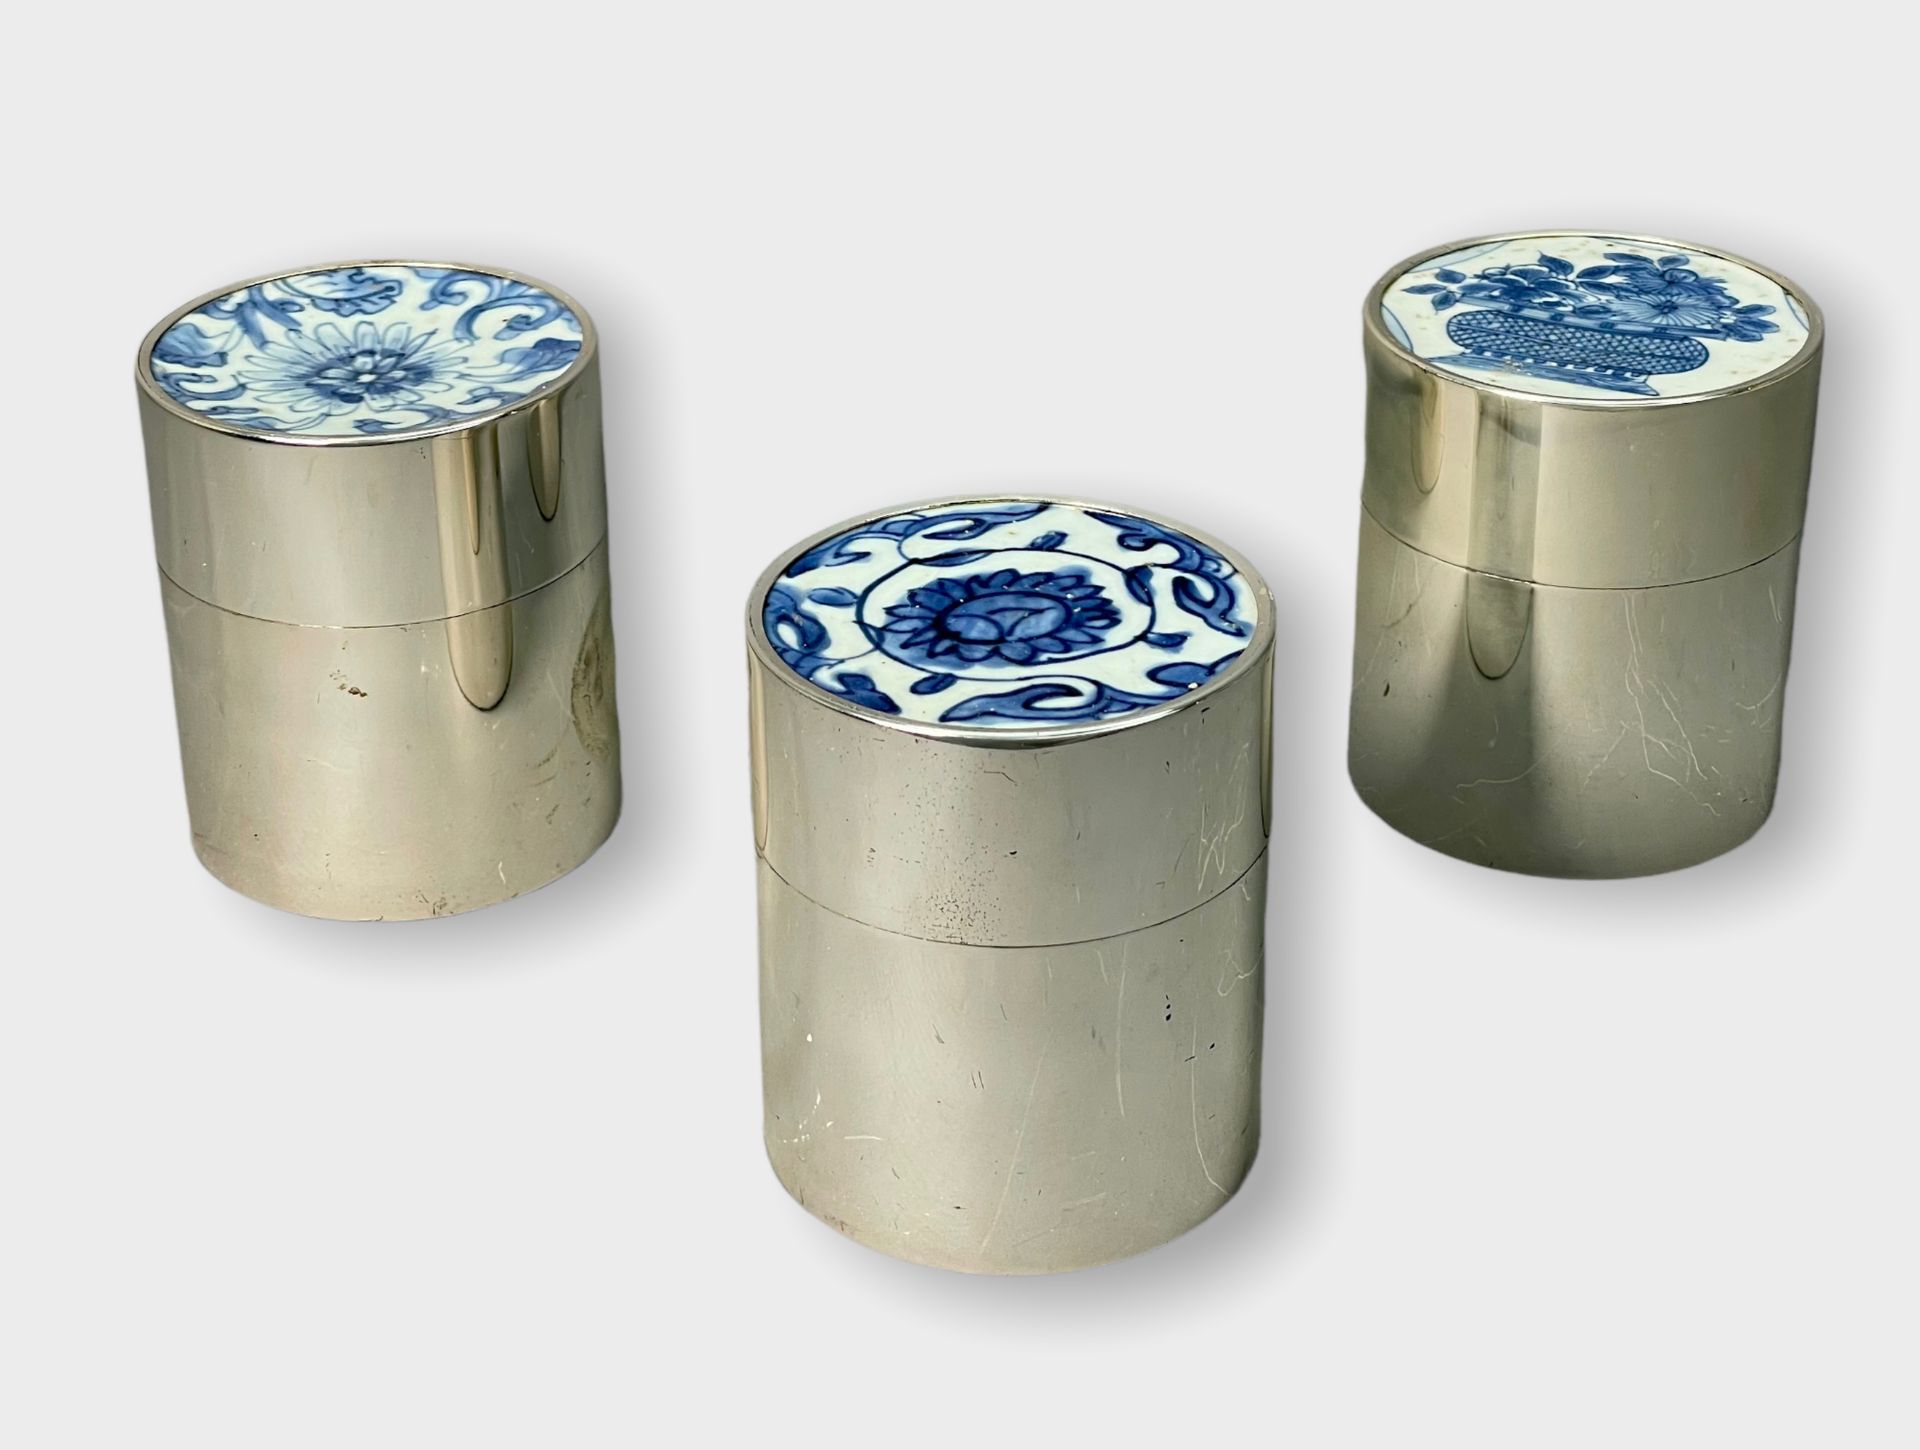 Drei Dosen mit chinesischer Keramik